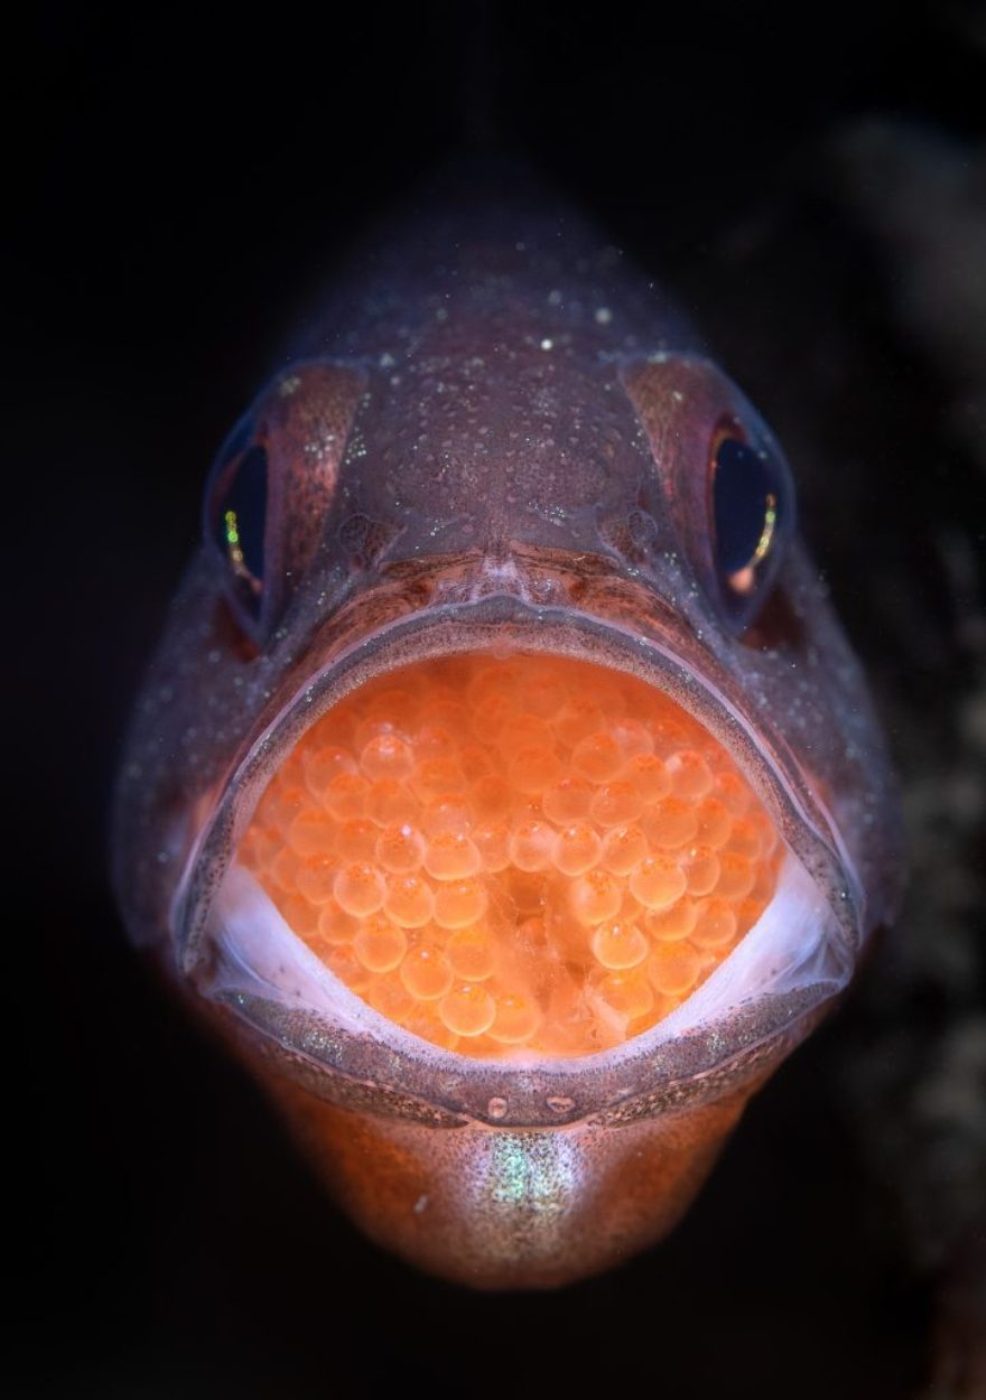 concurso de fotografia prêmio de fotografia fotografia da natureza fotografia subaquática